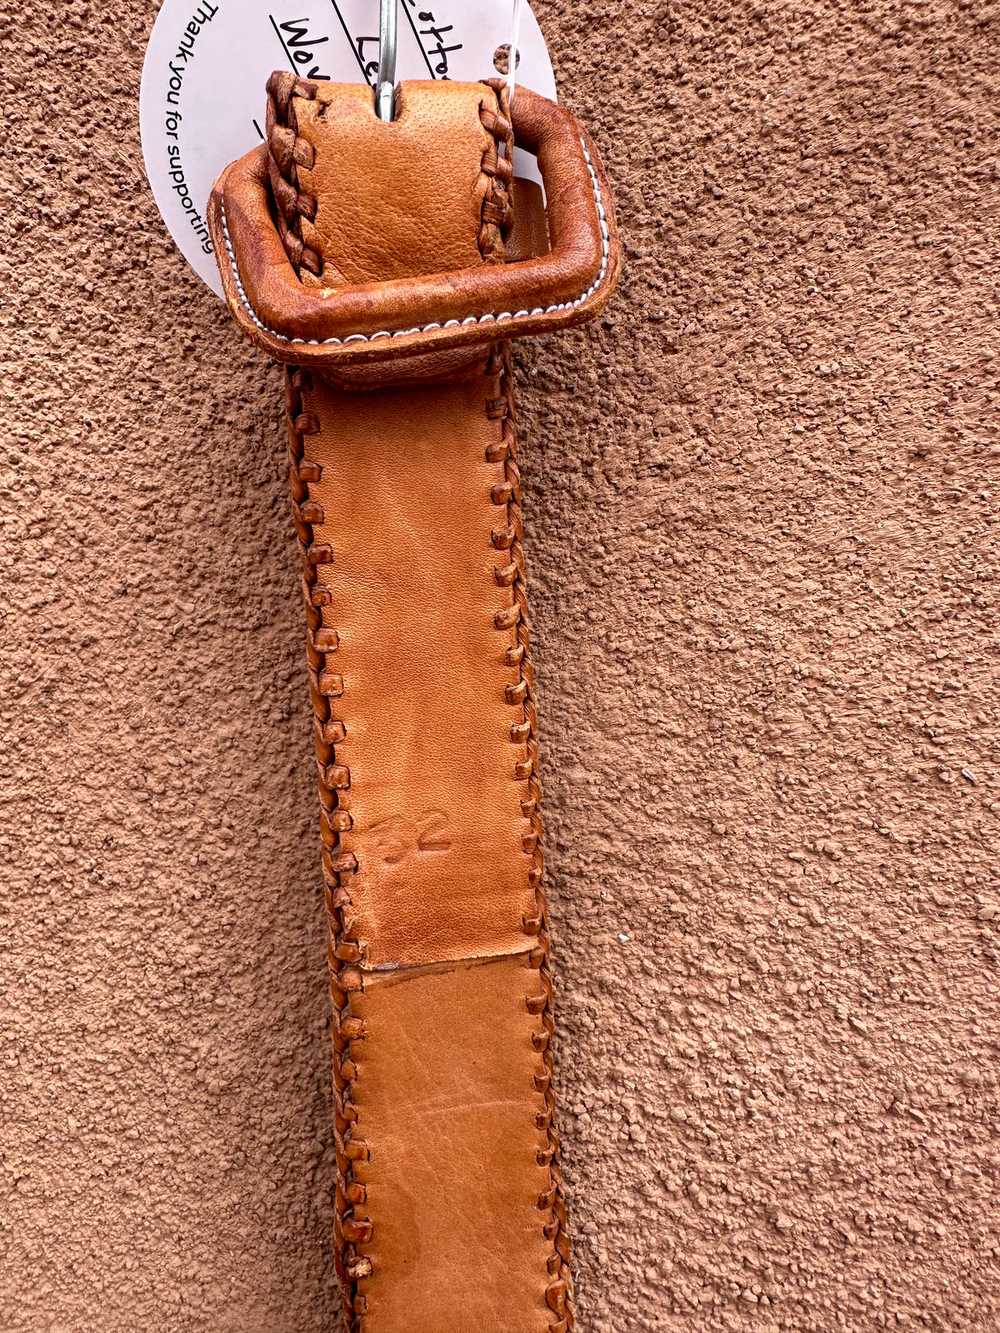 Cotton & Leather Woven Boho Belt - image 3